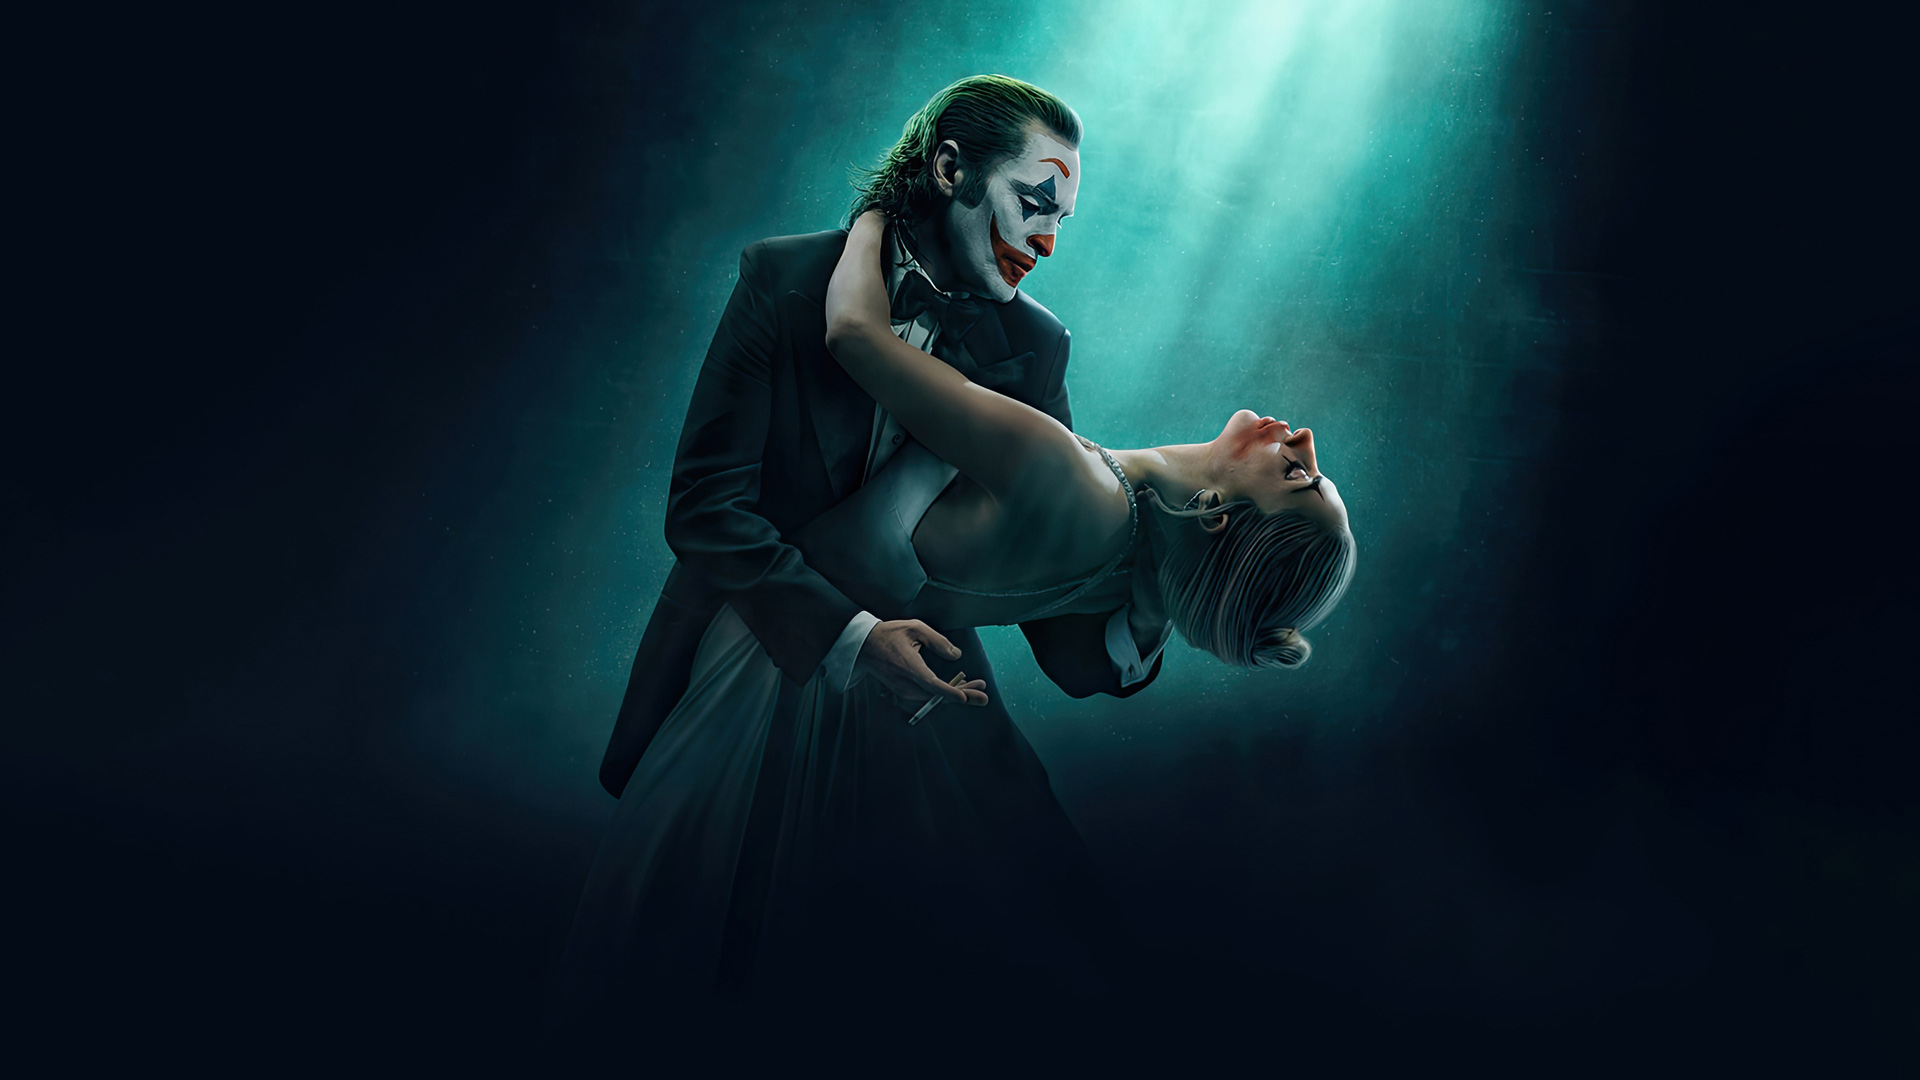 اولین تریلر رسمی فیلم Joker: Folie a deux منتشر شد